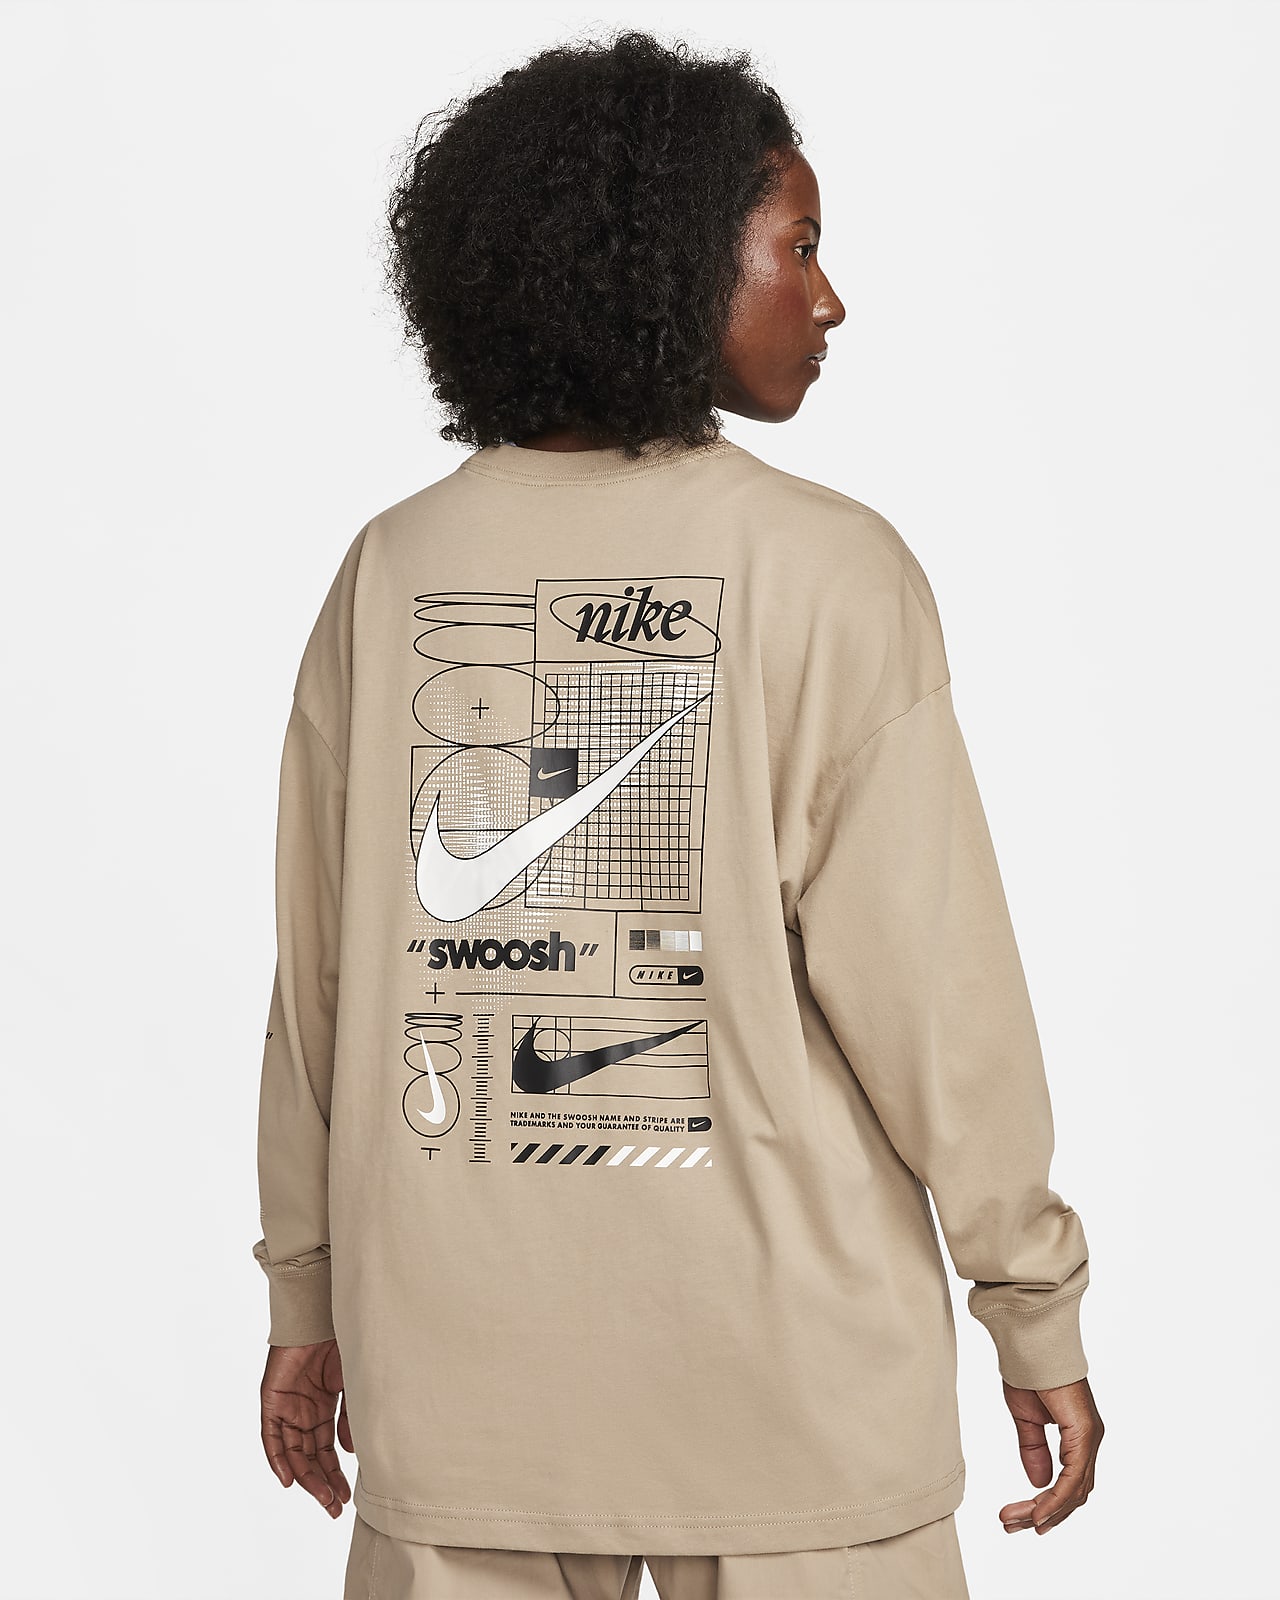 T-shirt à manches longues Nike Sportswear pour femme